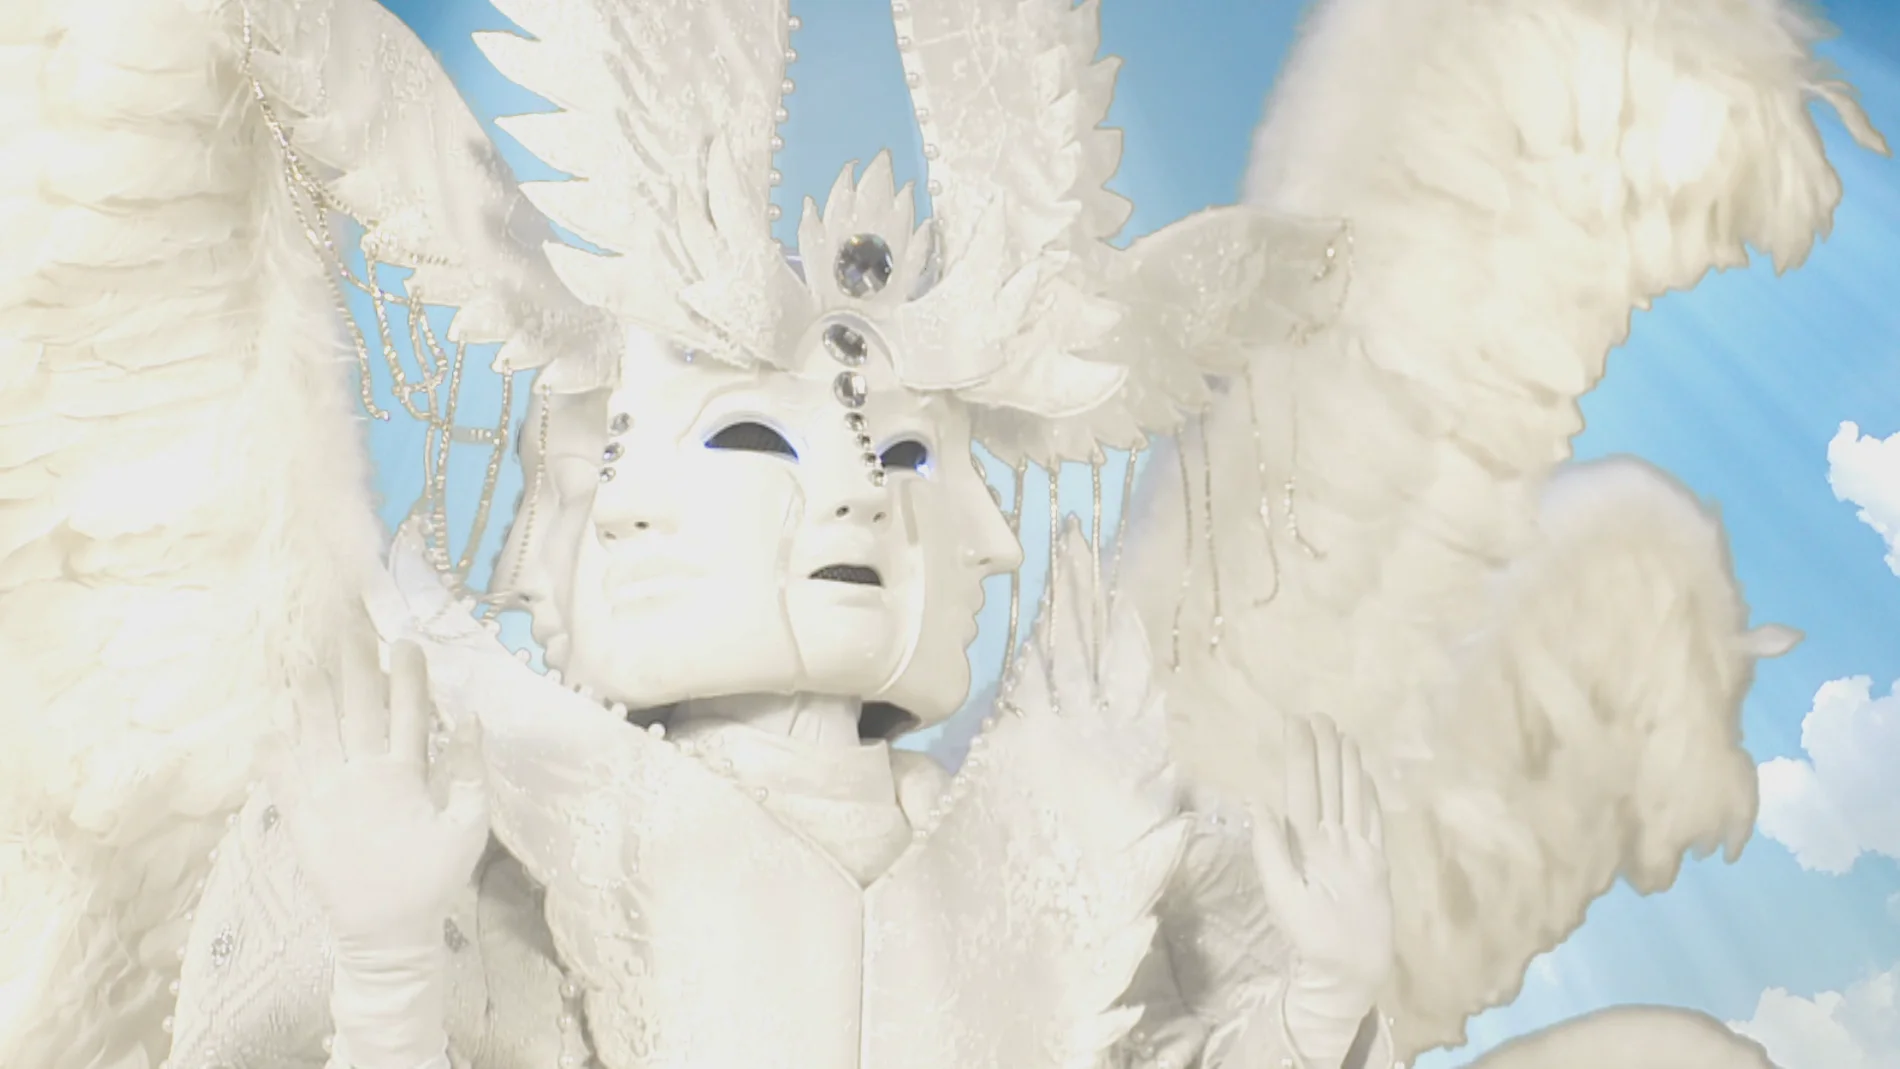 El Ángel y sus mil caras conquista a los investigadores: “Es inquietante y misteriosa”